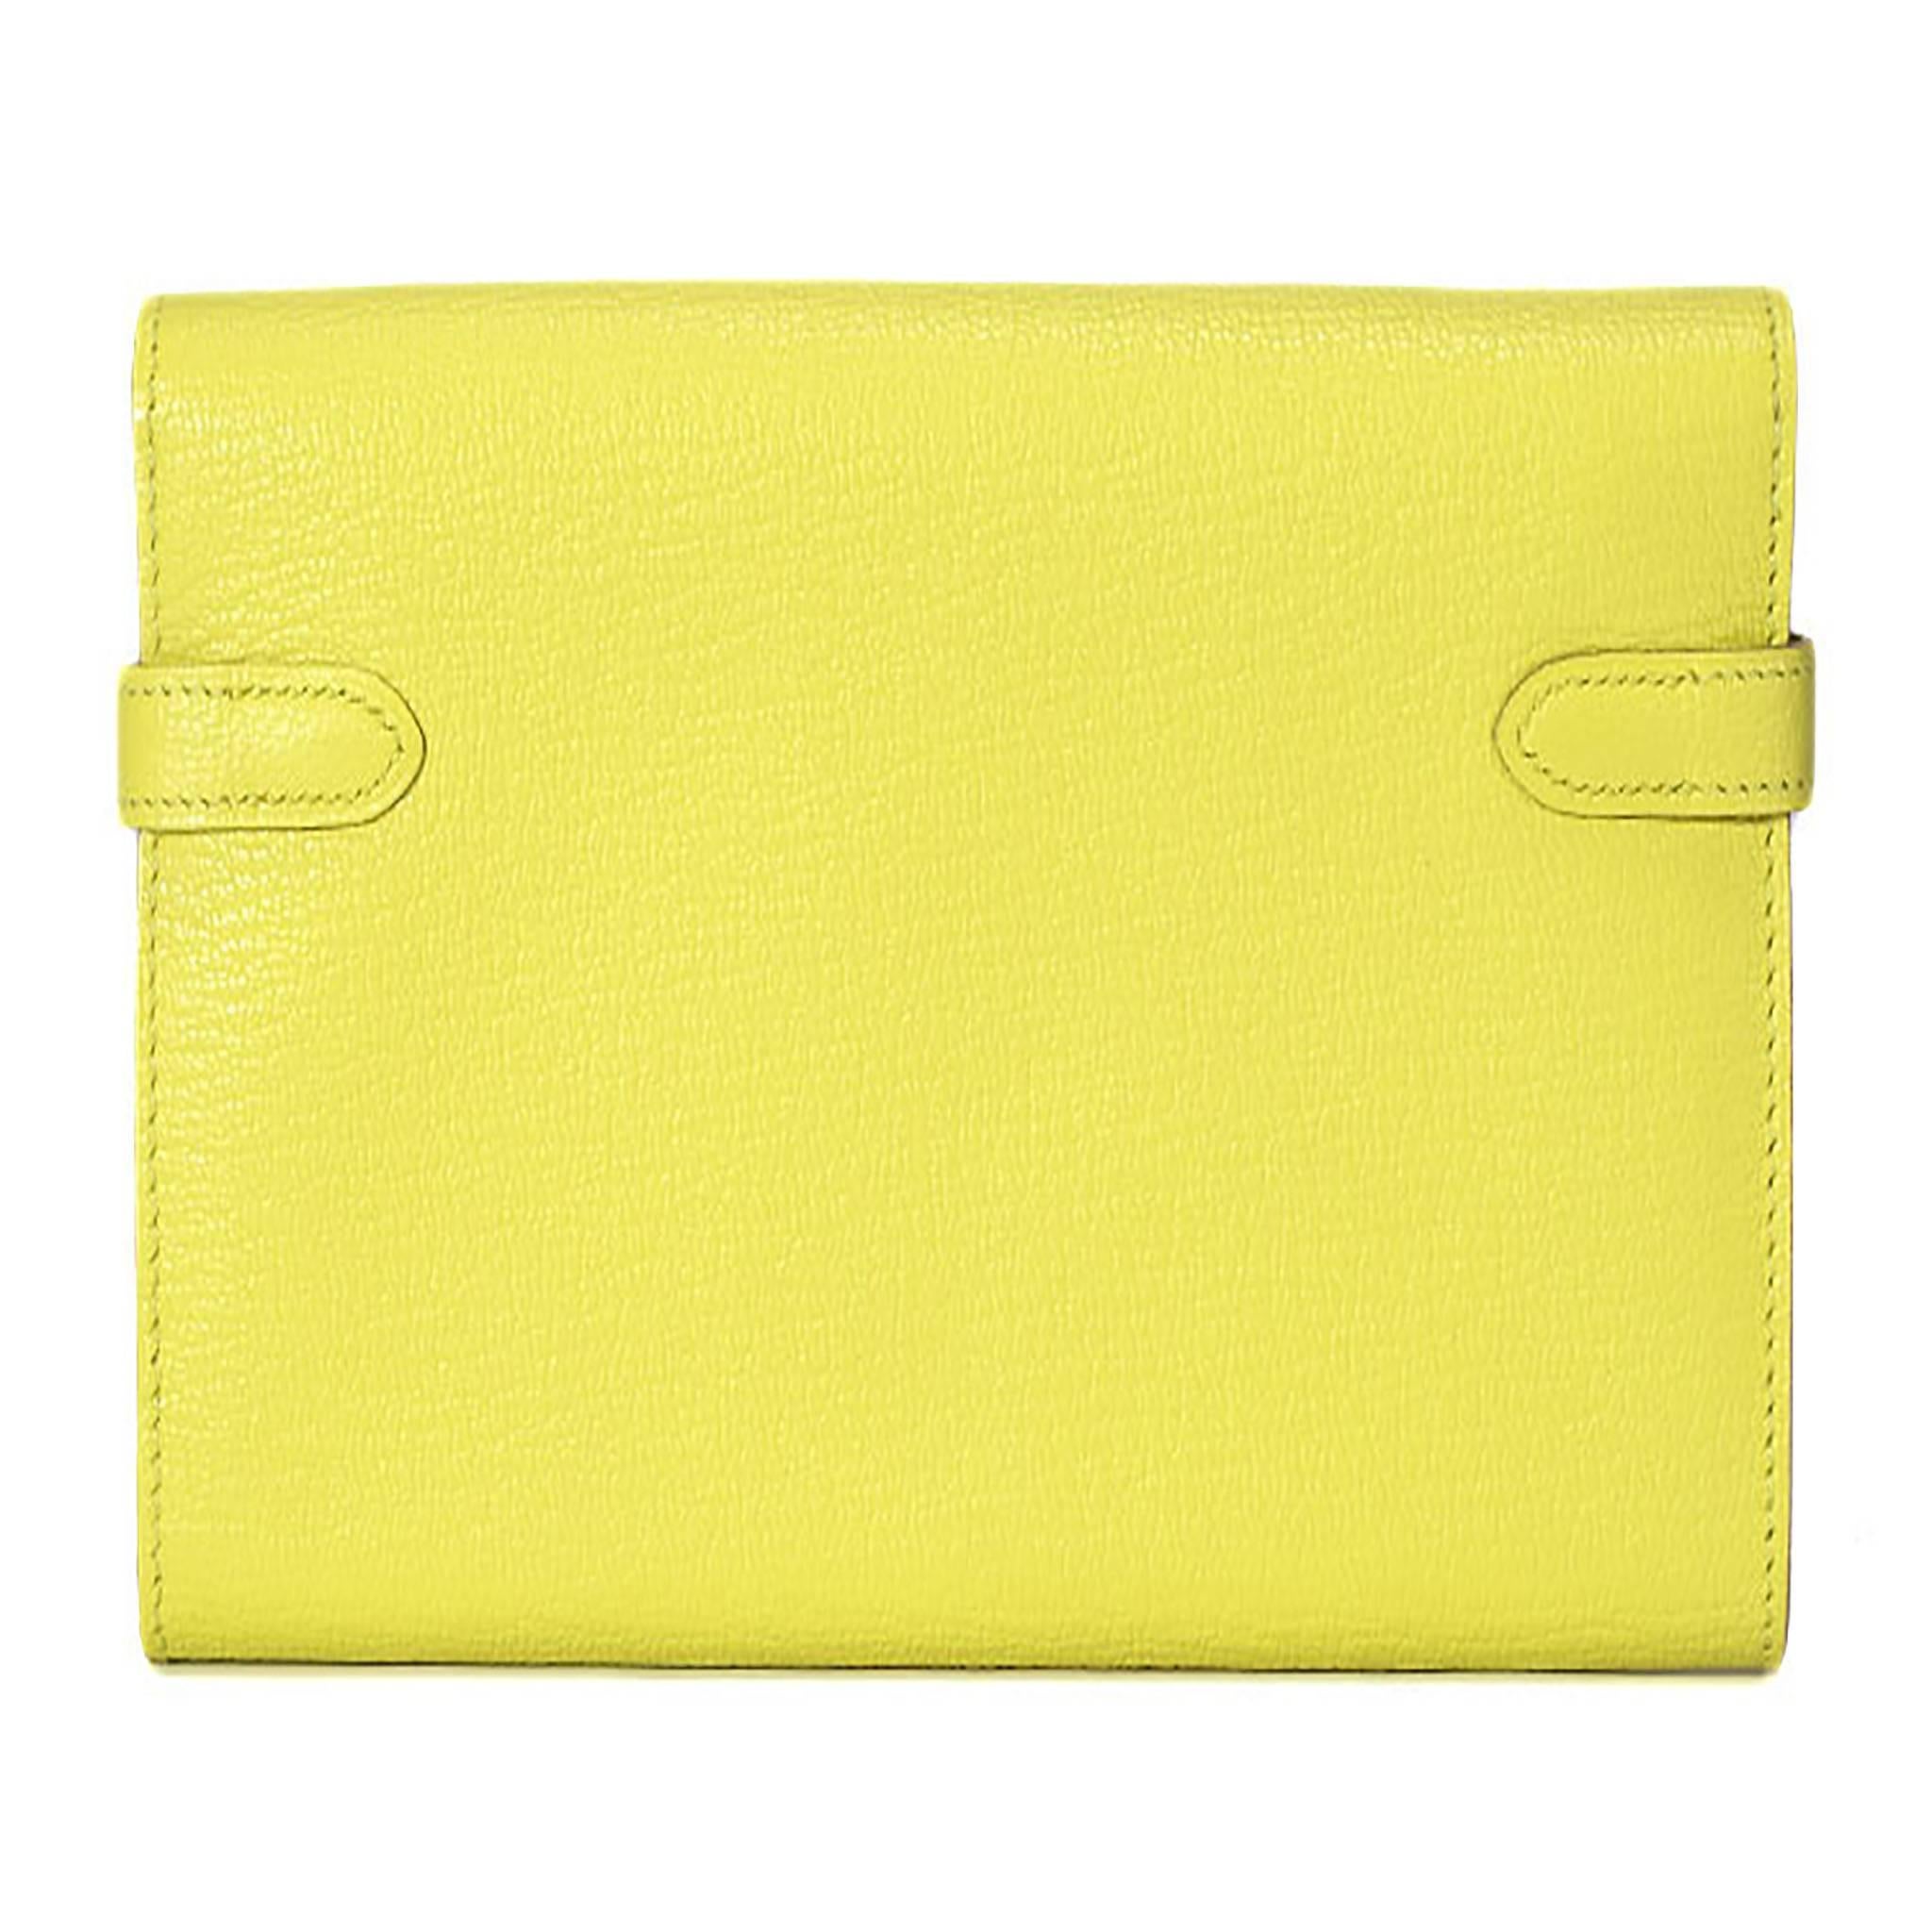 hermes wallet yellow